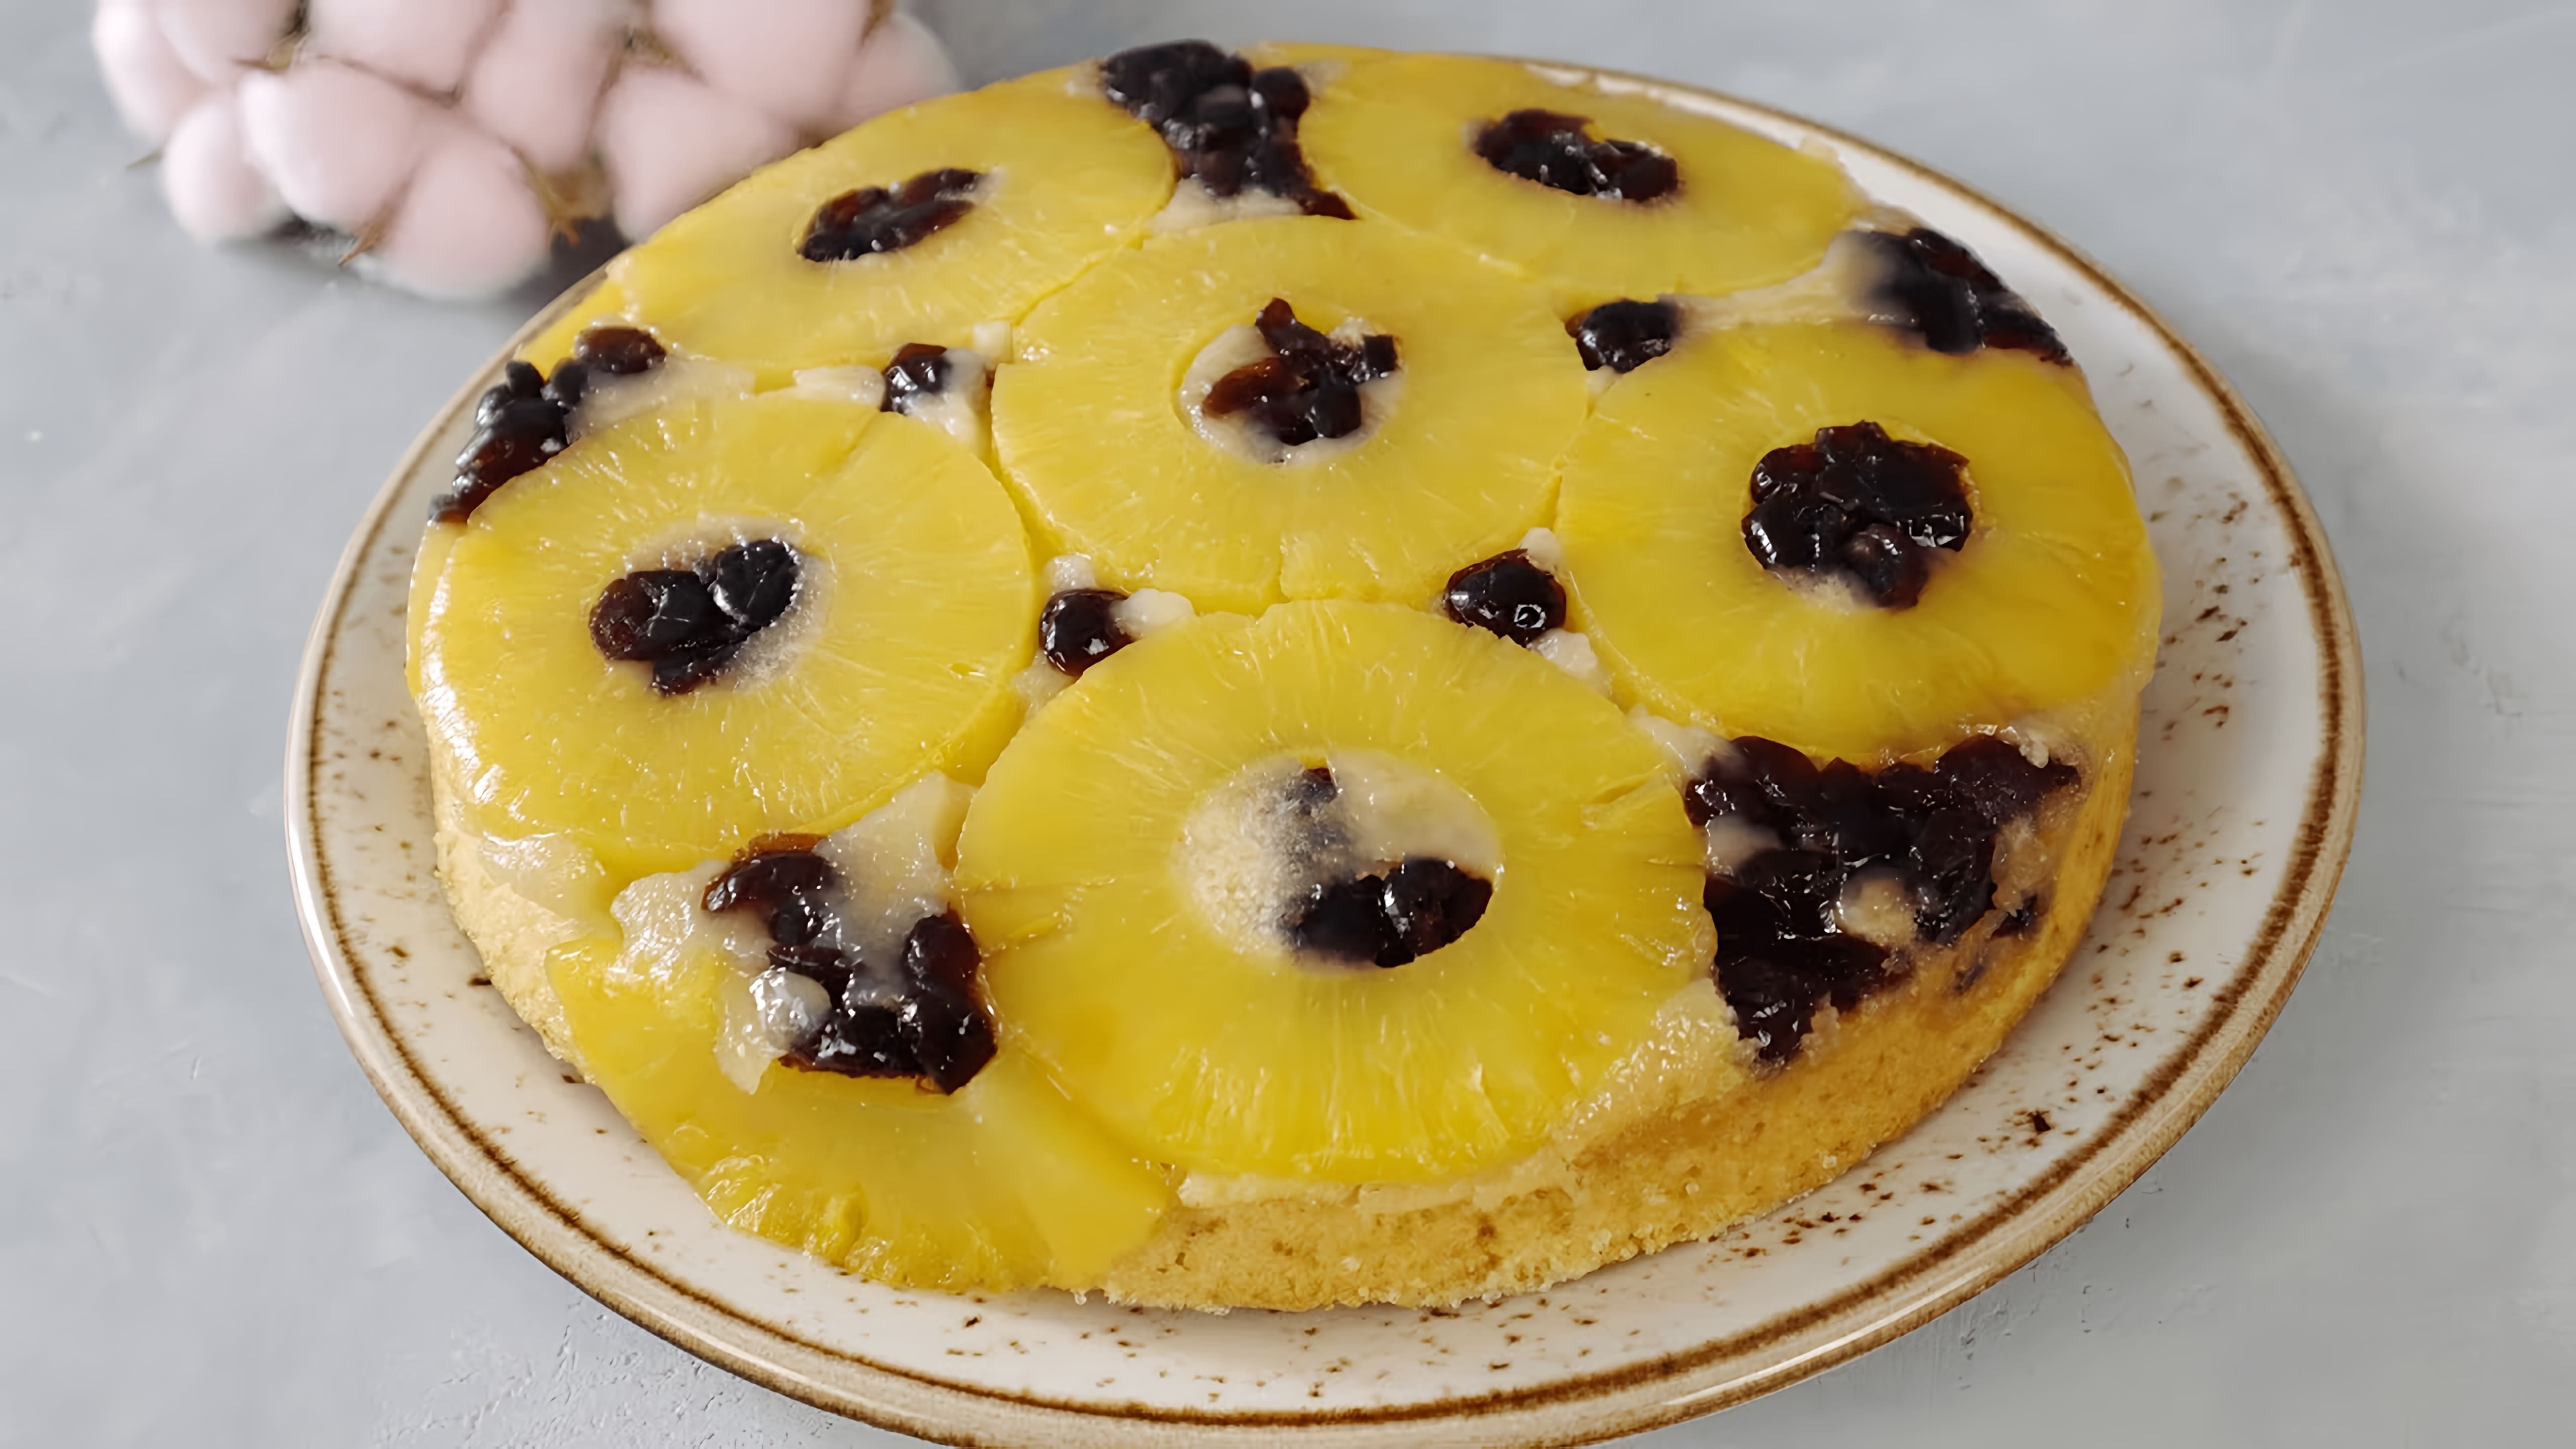 В этом видео демонстрируется процесс приготовления ананасового пирога